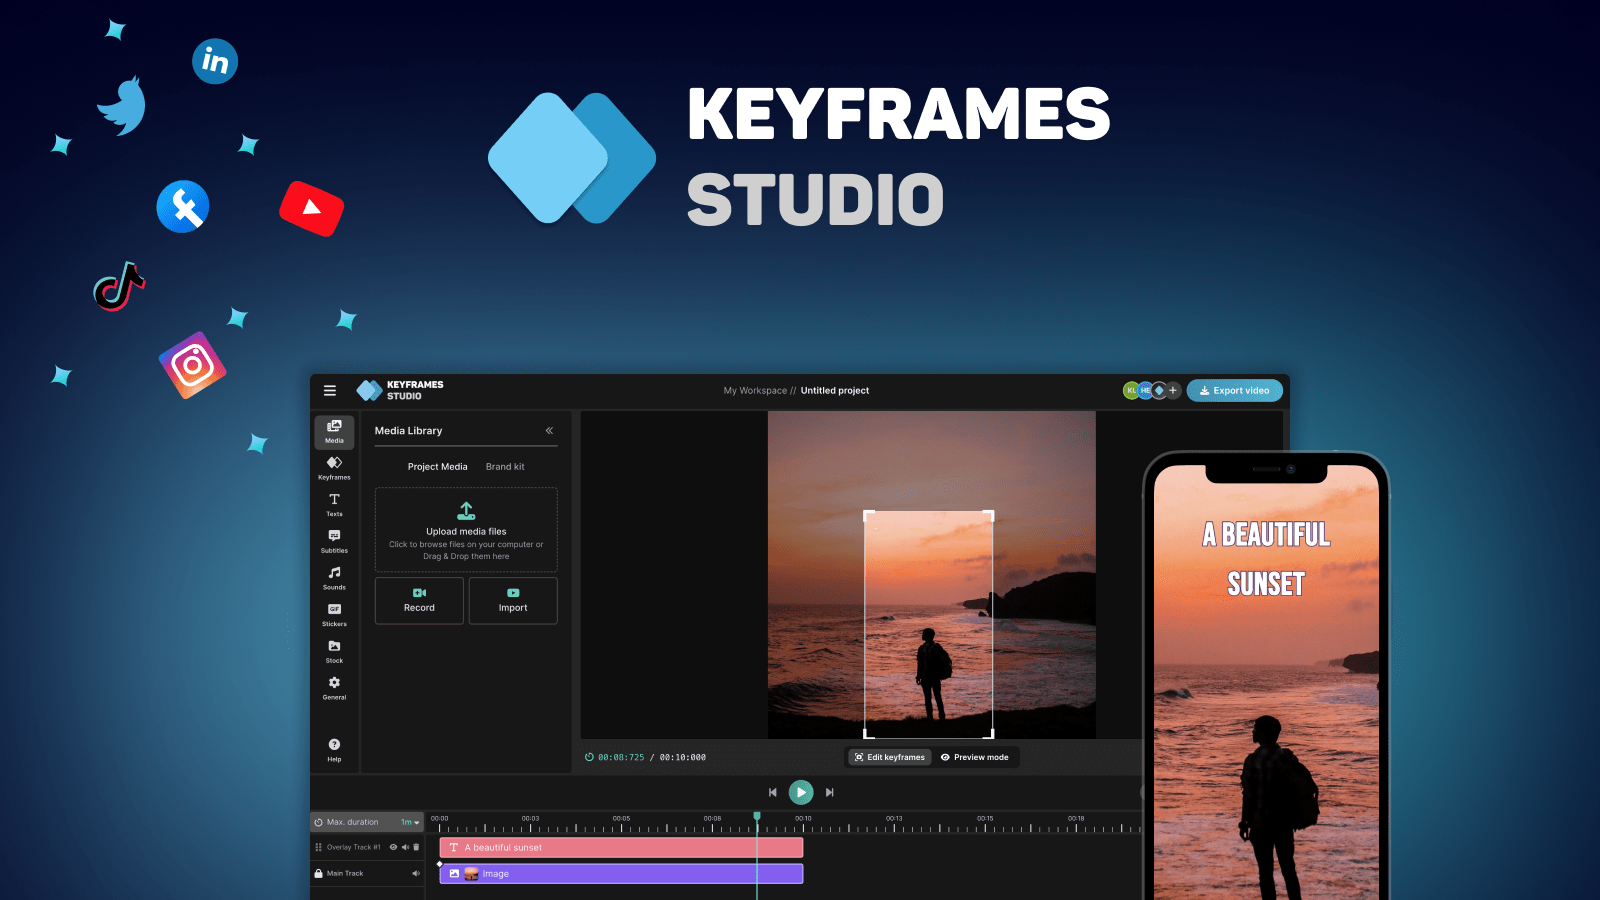 Keyframes.Studio - une plate-forme d'édition vidéo tout-en-un pour la création, l'édition et le partage de vidéos sur les réseaux sociaux